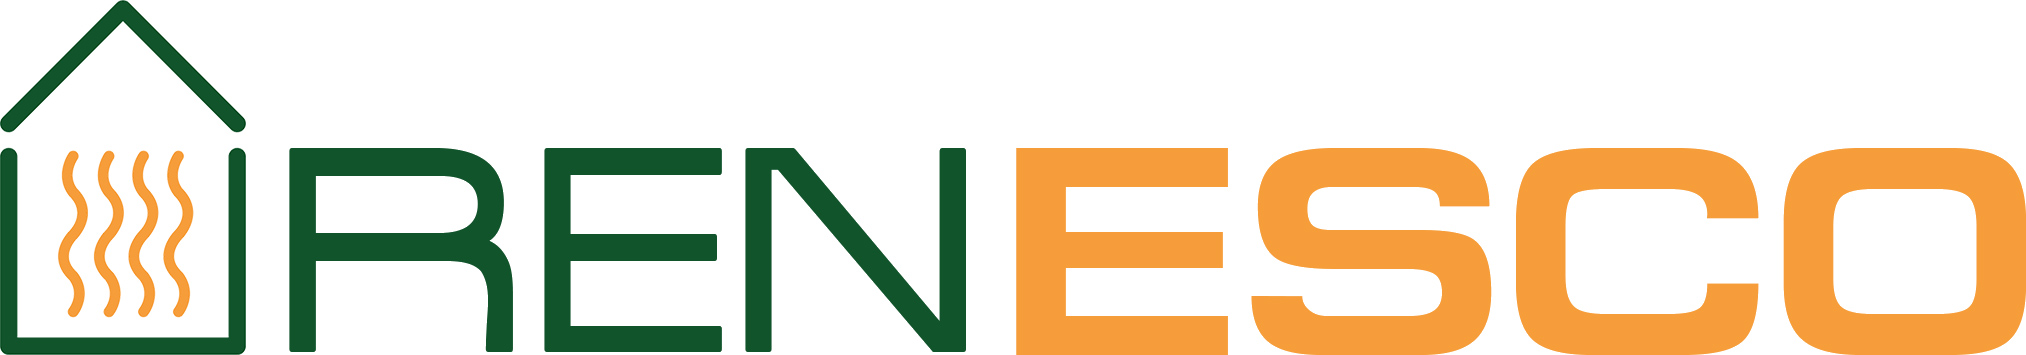 Renesco logo